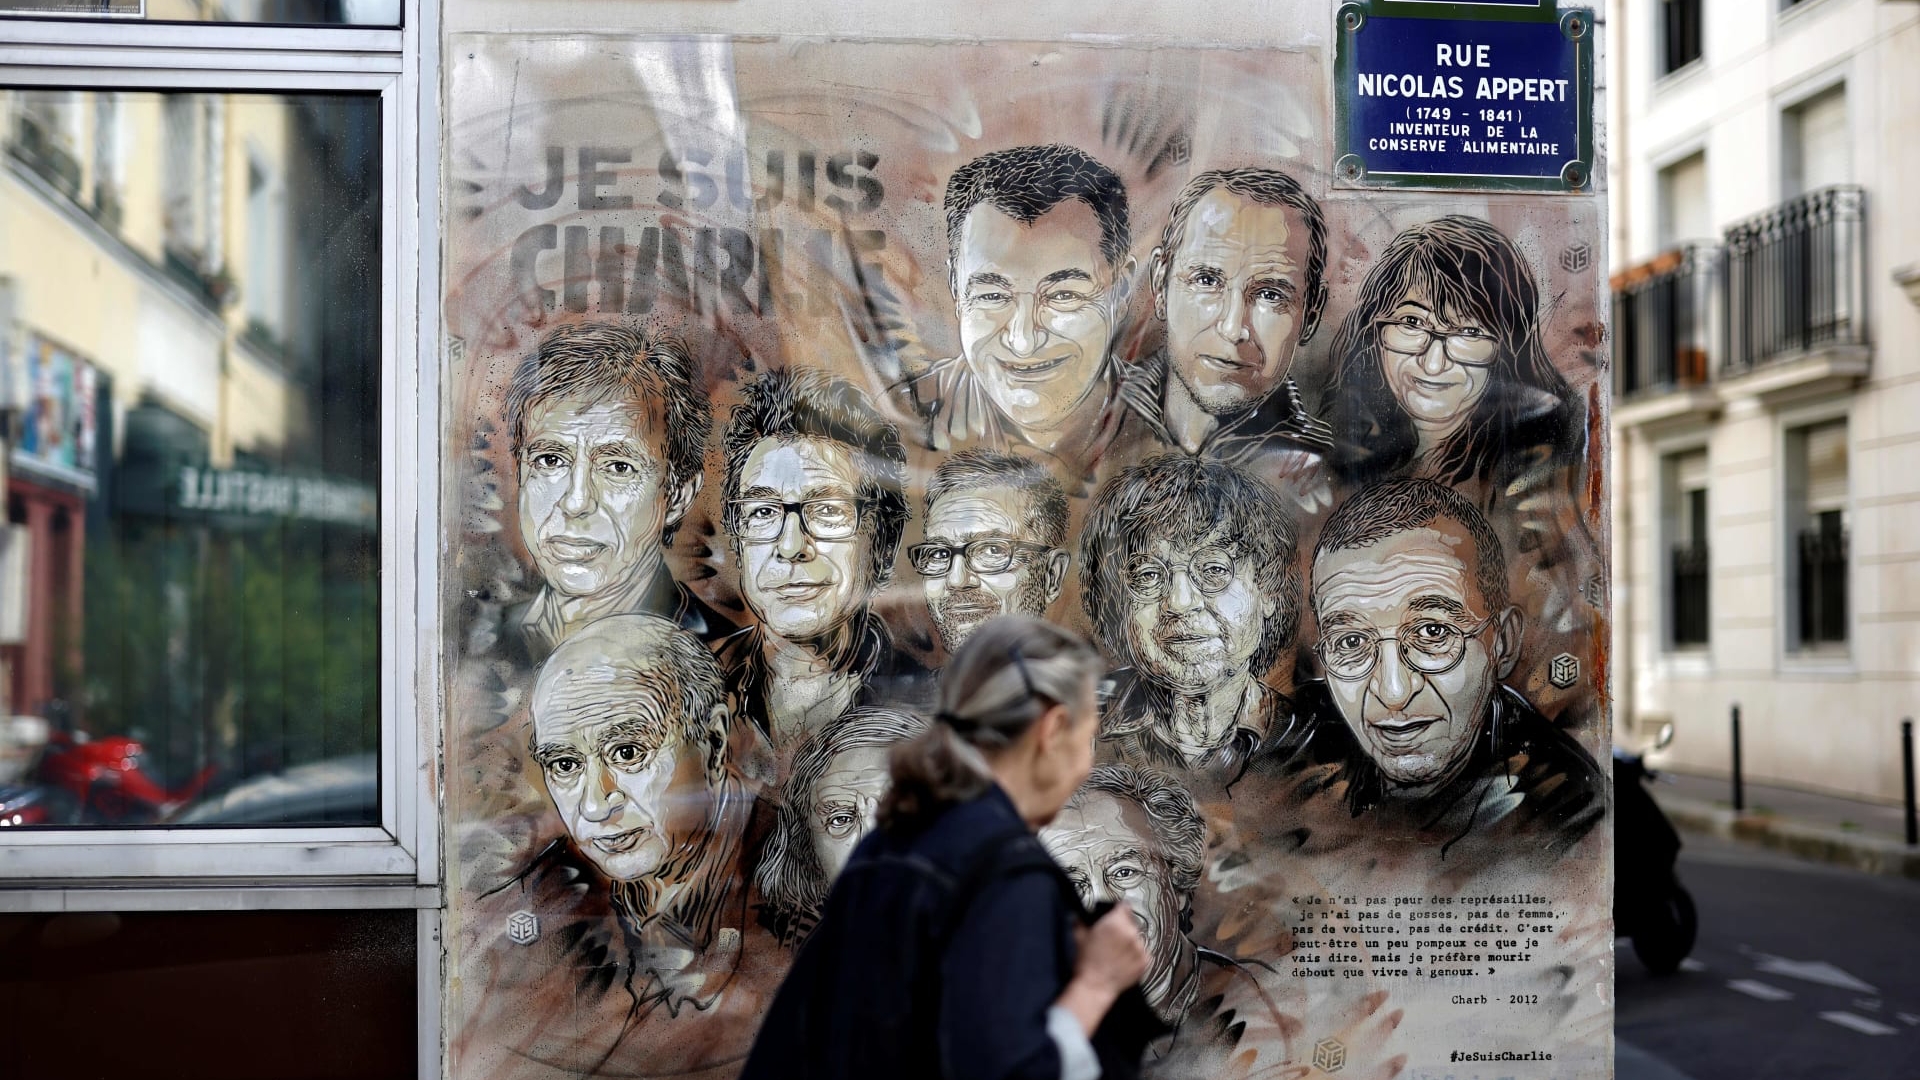 سيدة تمر بجوار لافتة تحيي ذكرى الضحايا في الهجوم على مقر صحيفة شارلي إبدو الفرنسية في 2015